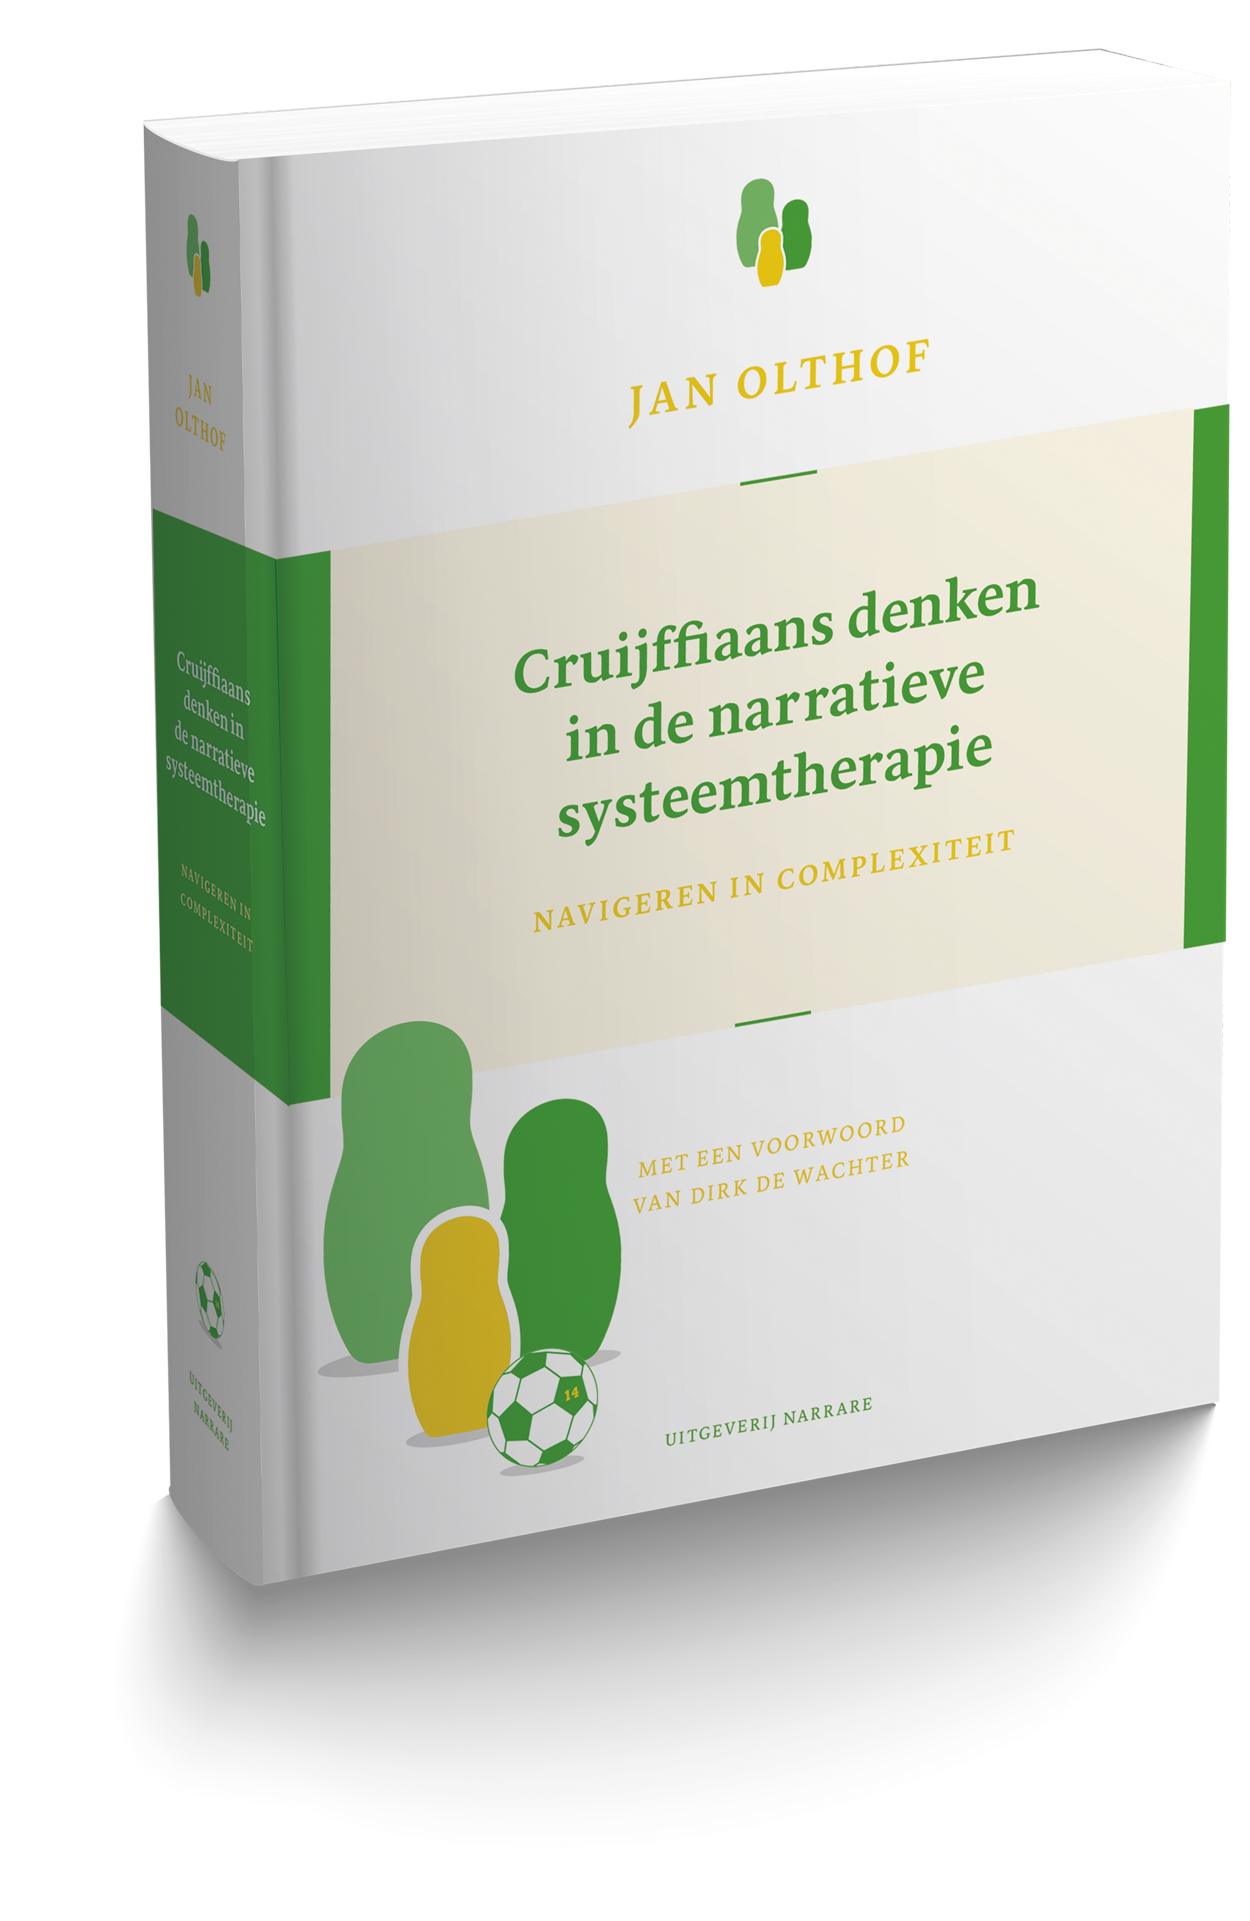 Cruijffiaans denken in de narratieve systeemtherapie Jan Olthof